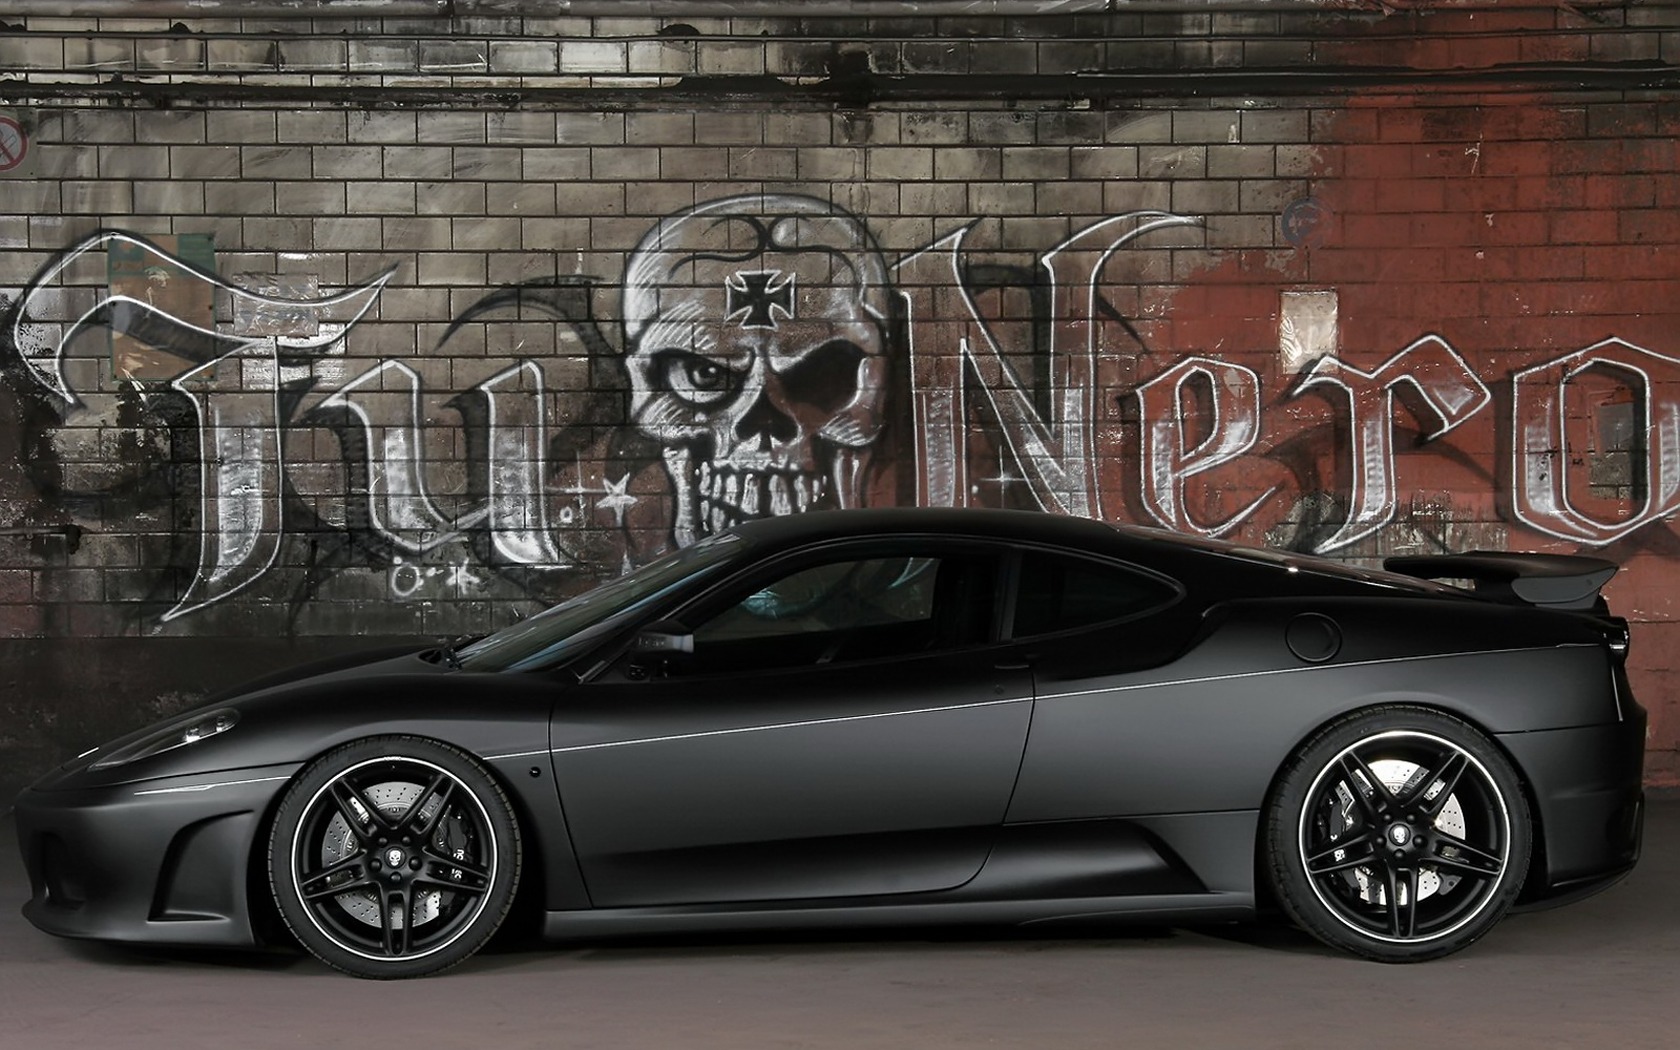 Black Ferrari Car Hd Wallpaper